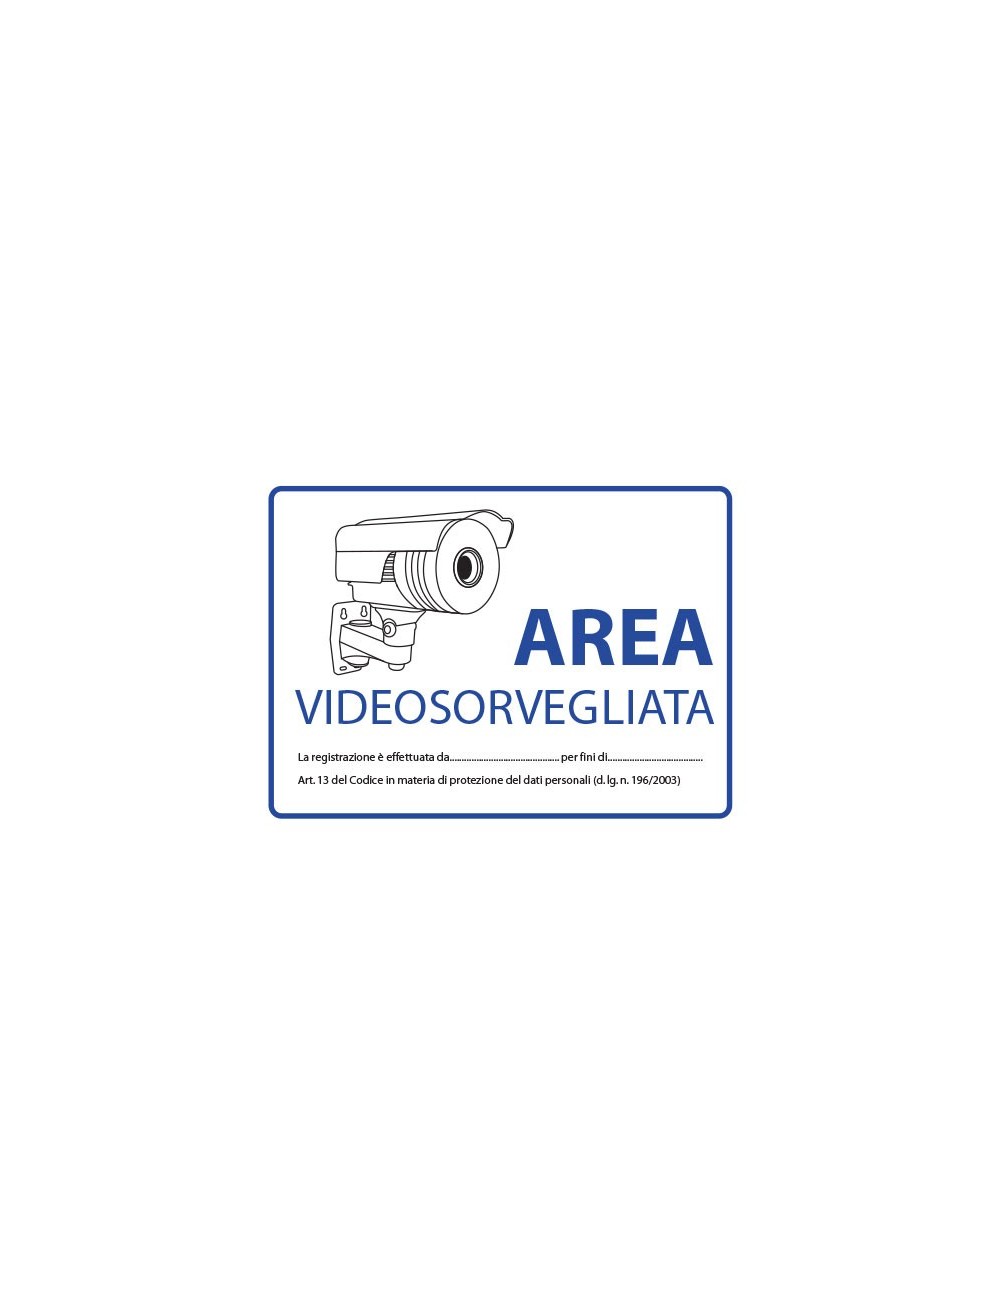 Videosurveillance sign